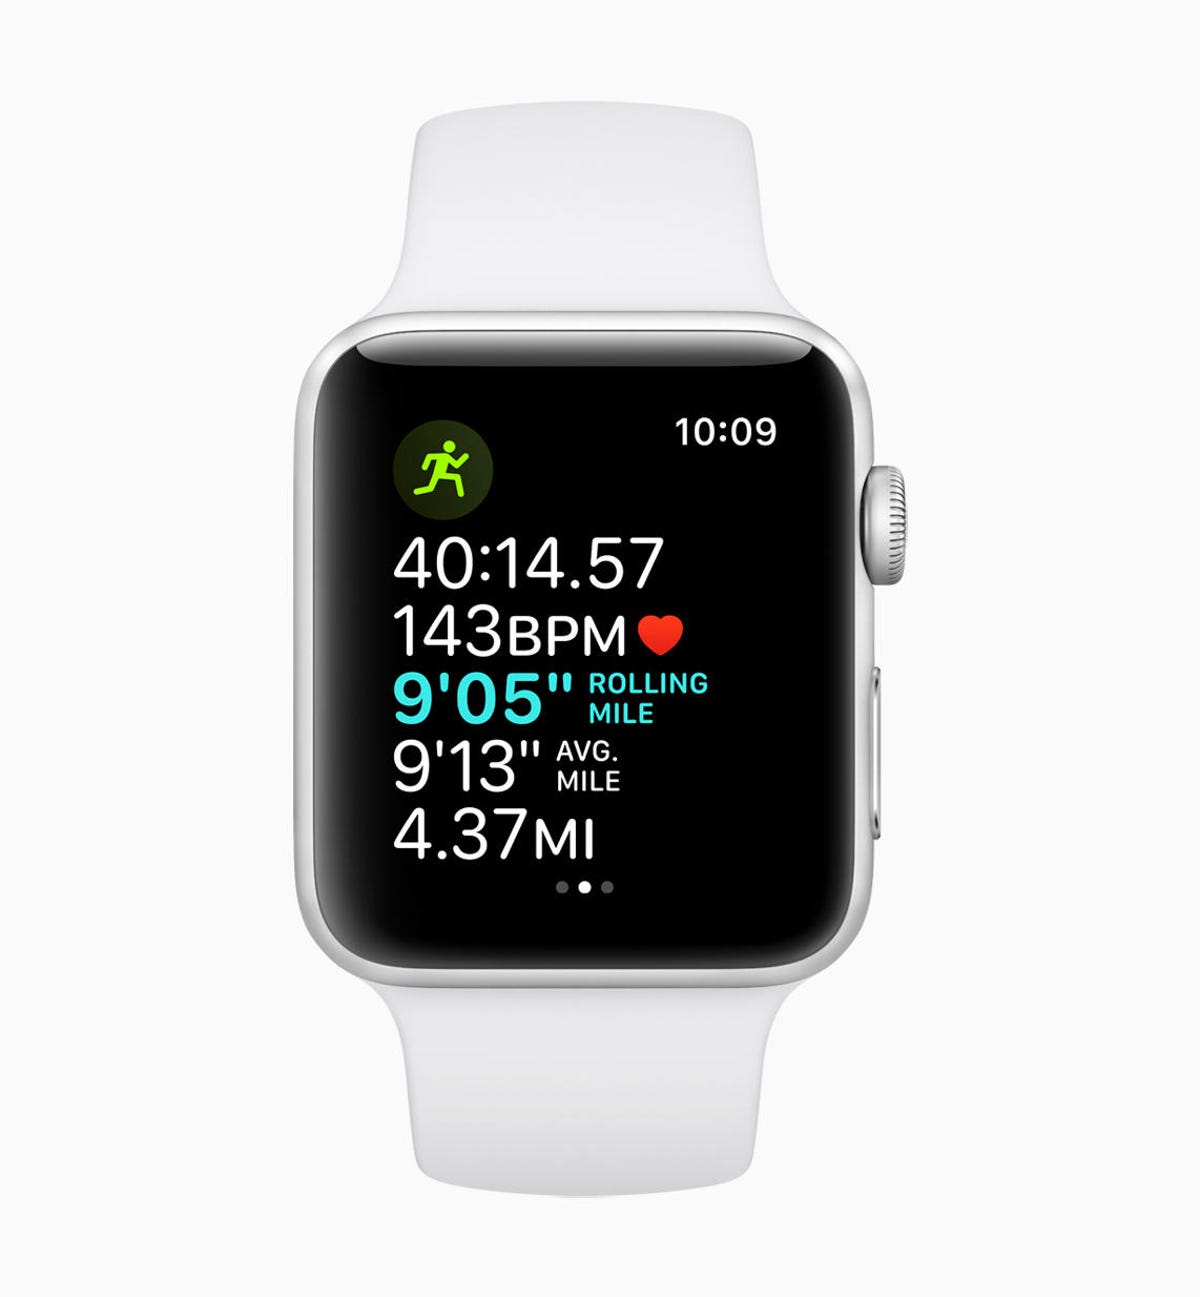 apple-watchos-5-running-features-screen-06042018